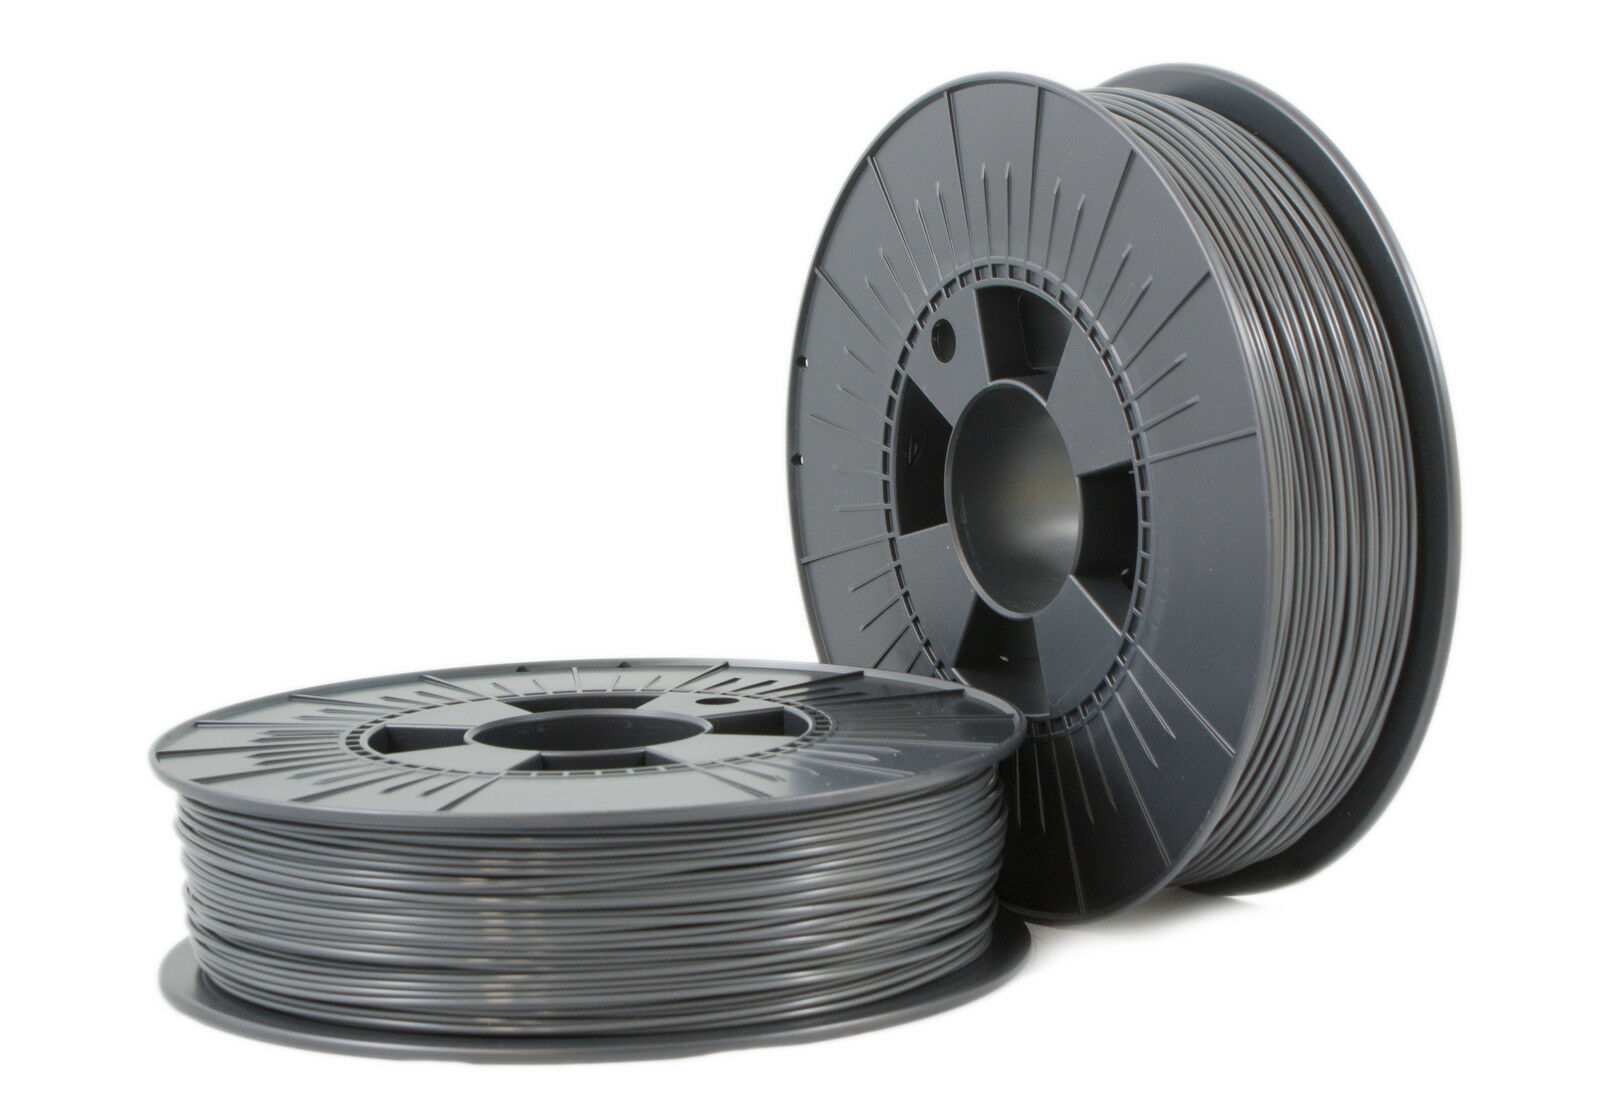 € 42,60 / Kilogram Abs 1,75mm  Iron Grey Ca. Ral 7011 0,75kg - 3d Filament Suppl